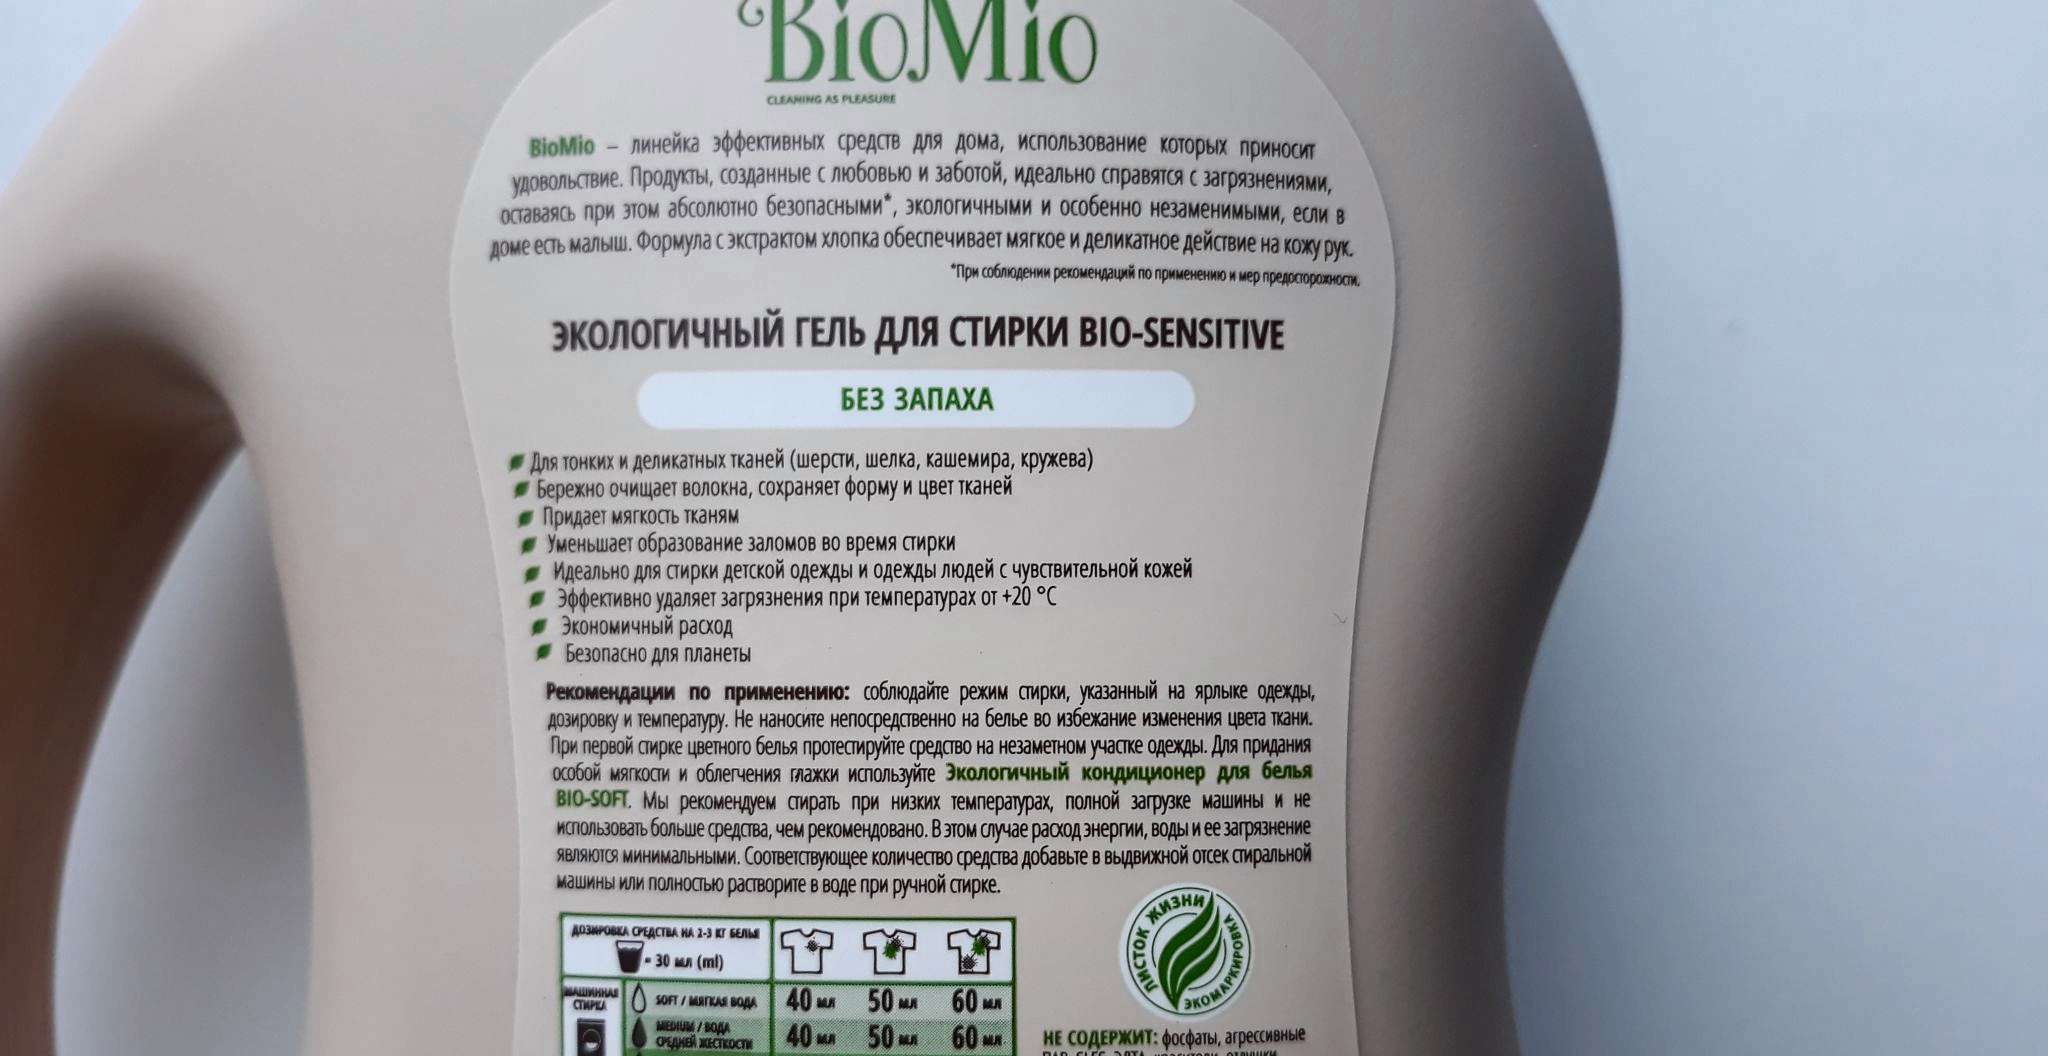 BioMio gēla sastāvs